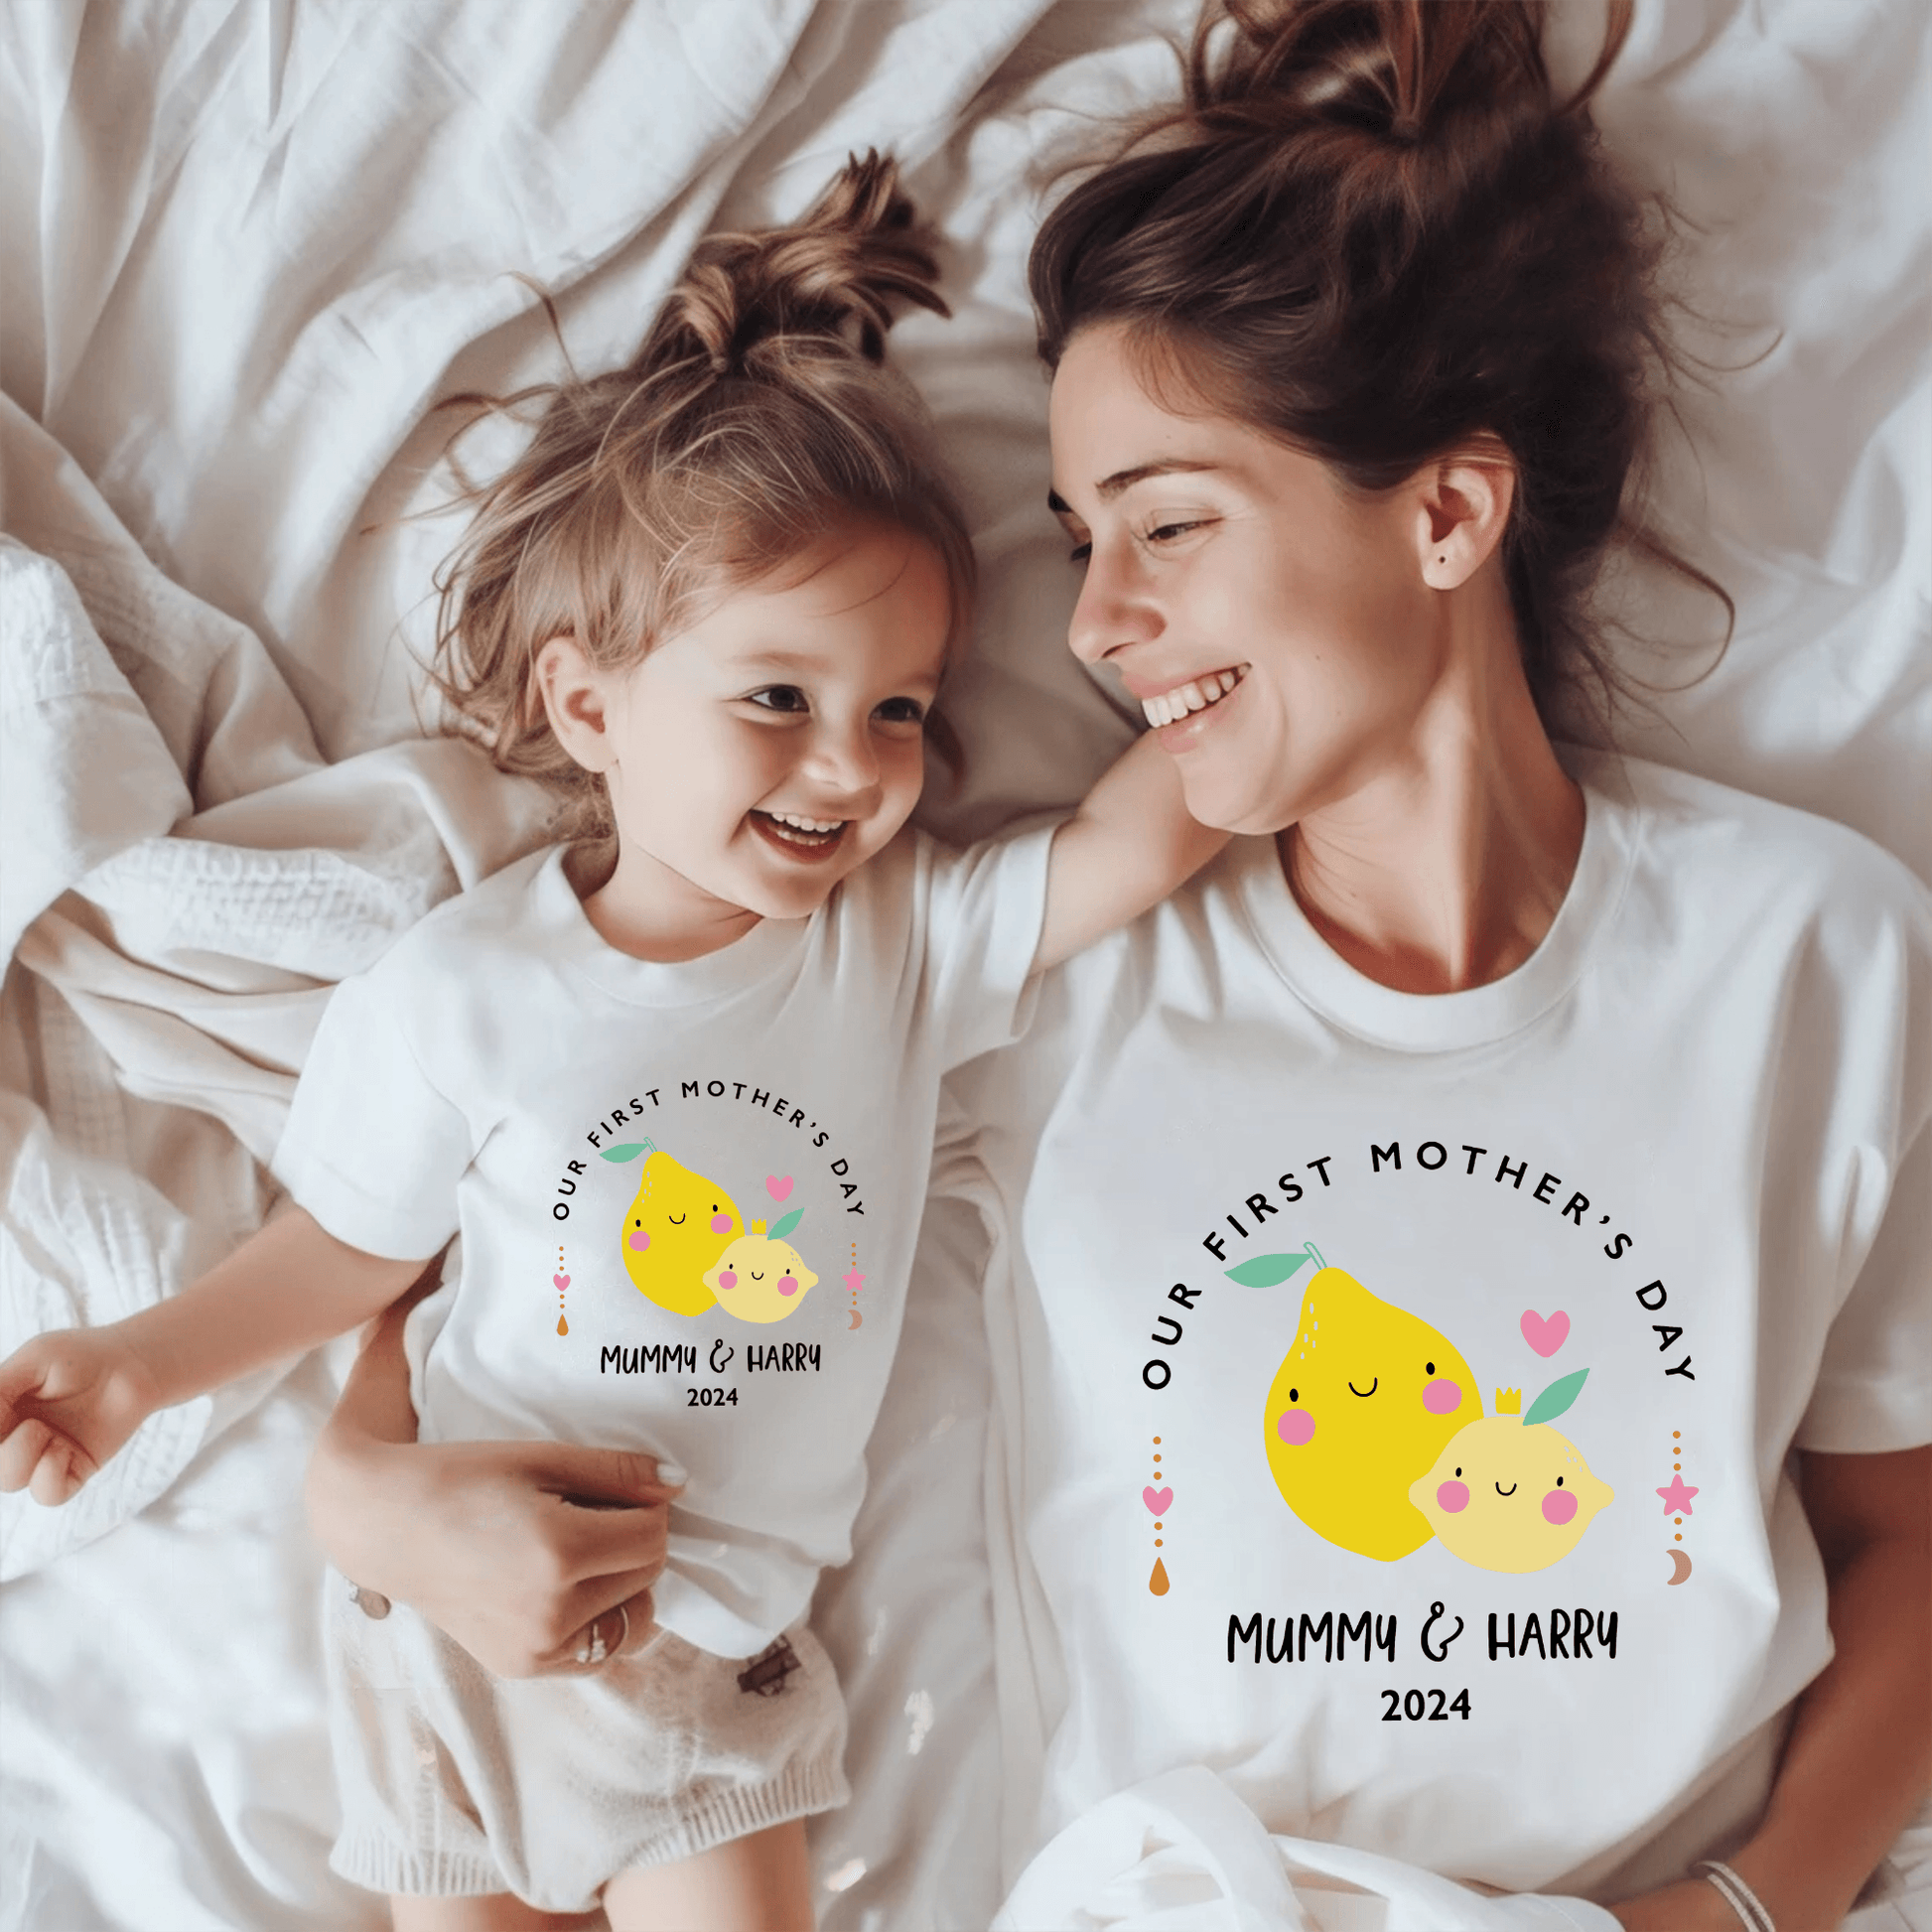 Erster Muttertag - Personalisiertes T-Shirt-Duo für Mutter & Kind - GiftHaus